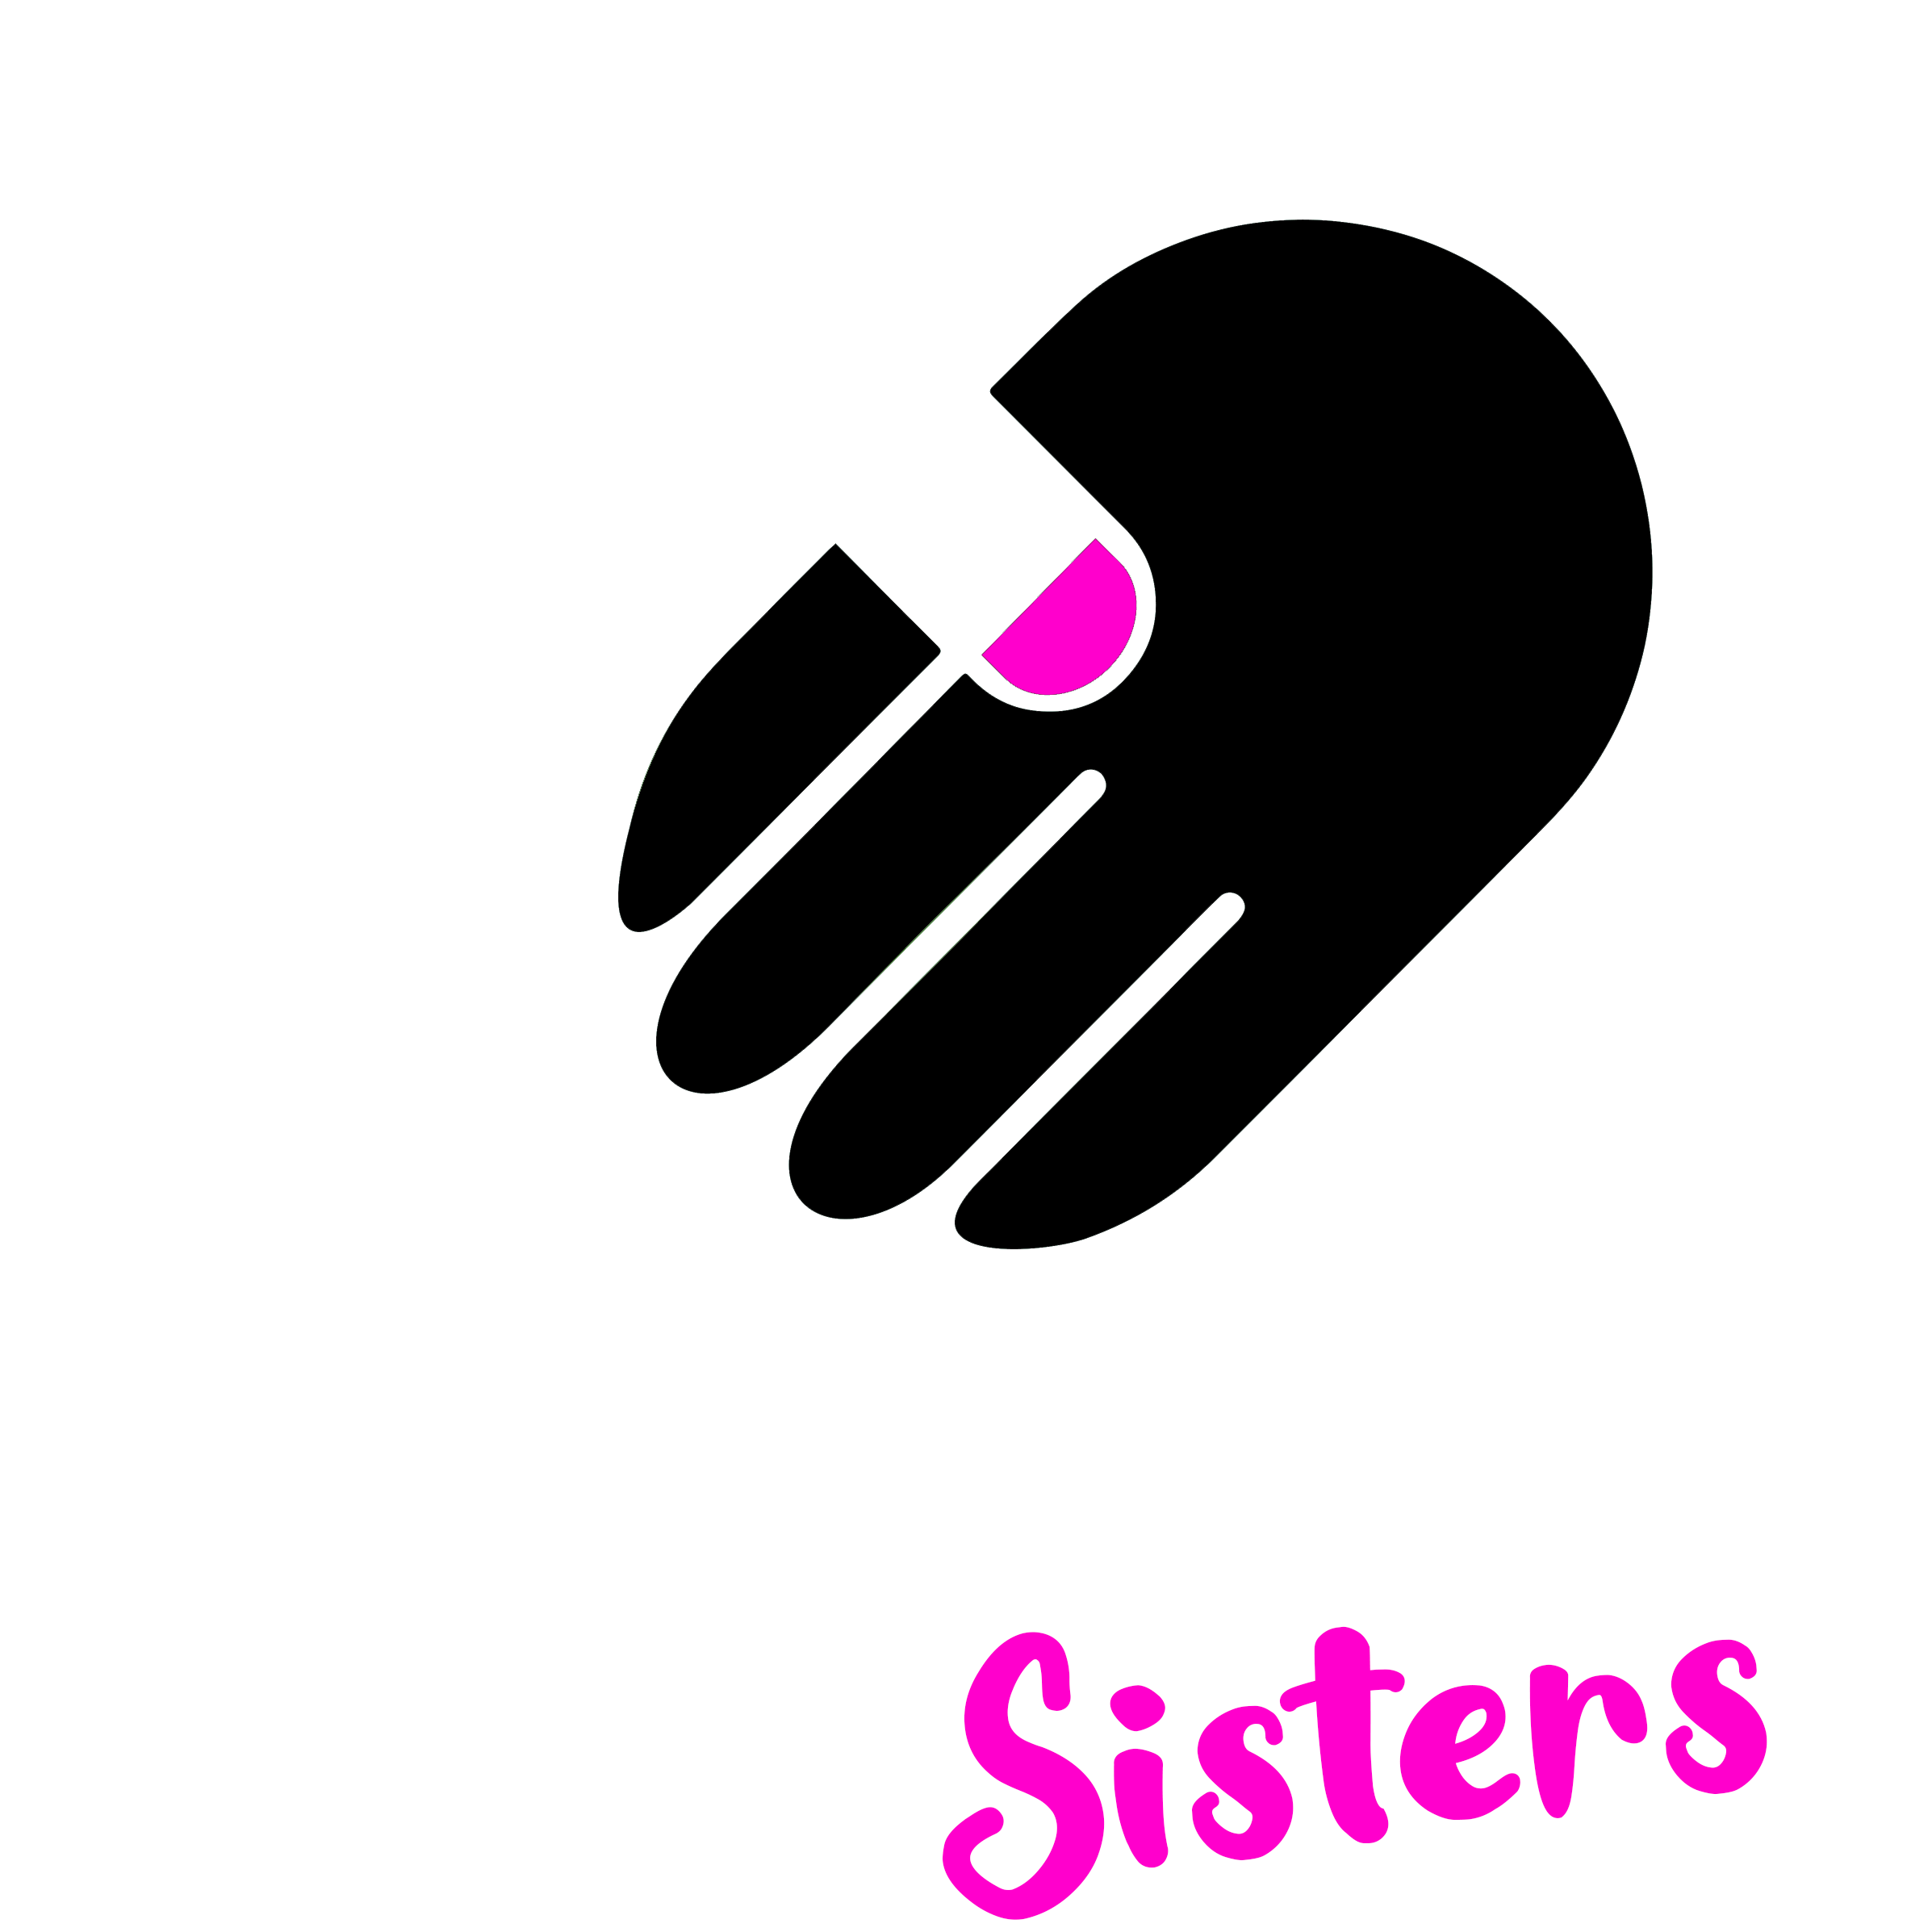 HELA Sisters